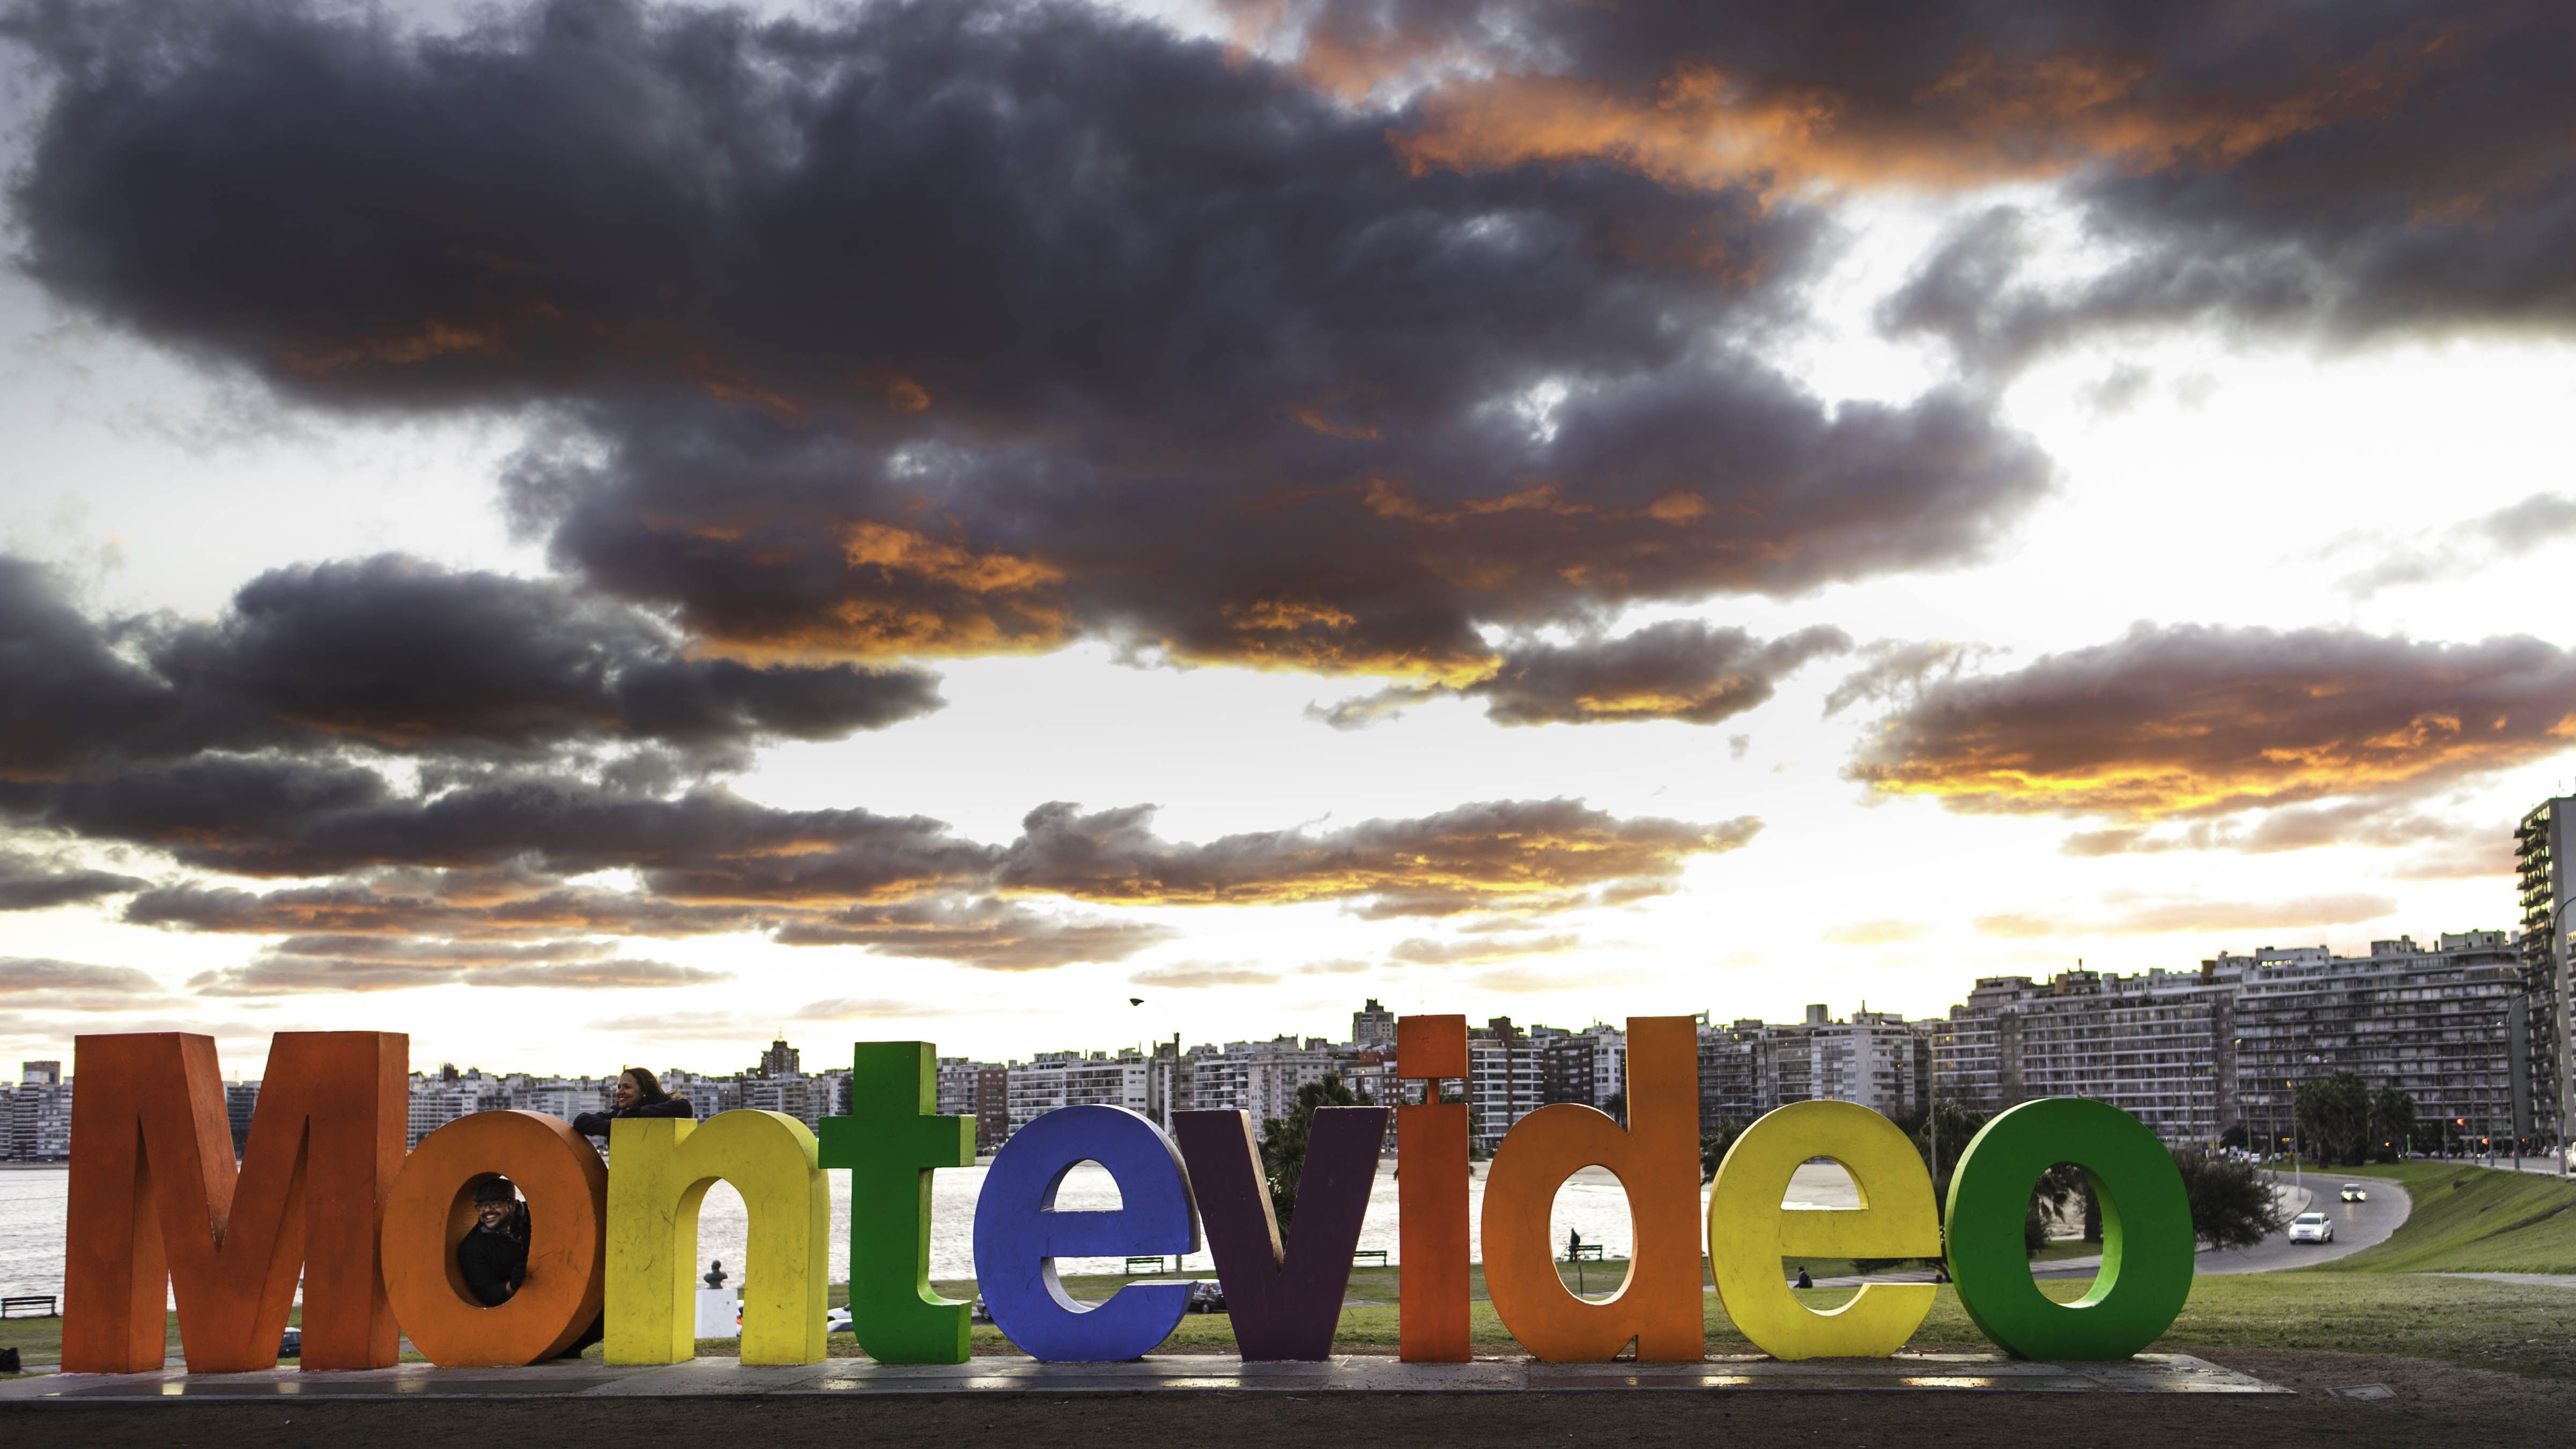 Según la intendencia de Montevideo, desde 2011 hasta hoy se llevan edificados unas 20.000 unidades bajo la ley de vivienda de interés social, con superficies promedio de 55 m2 y valores de USD 100.000